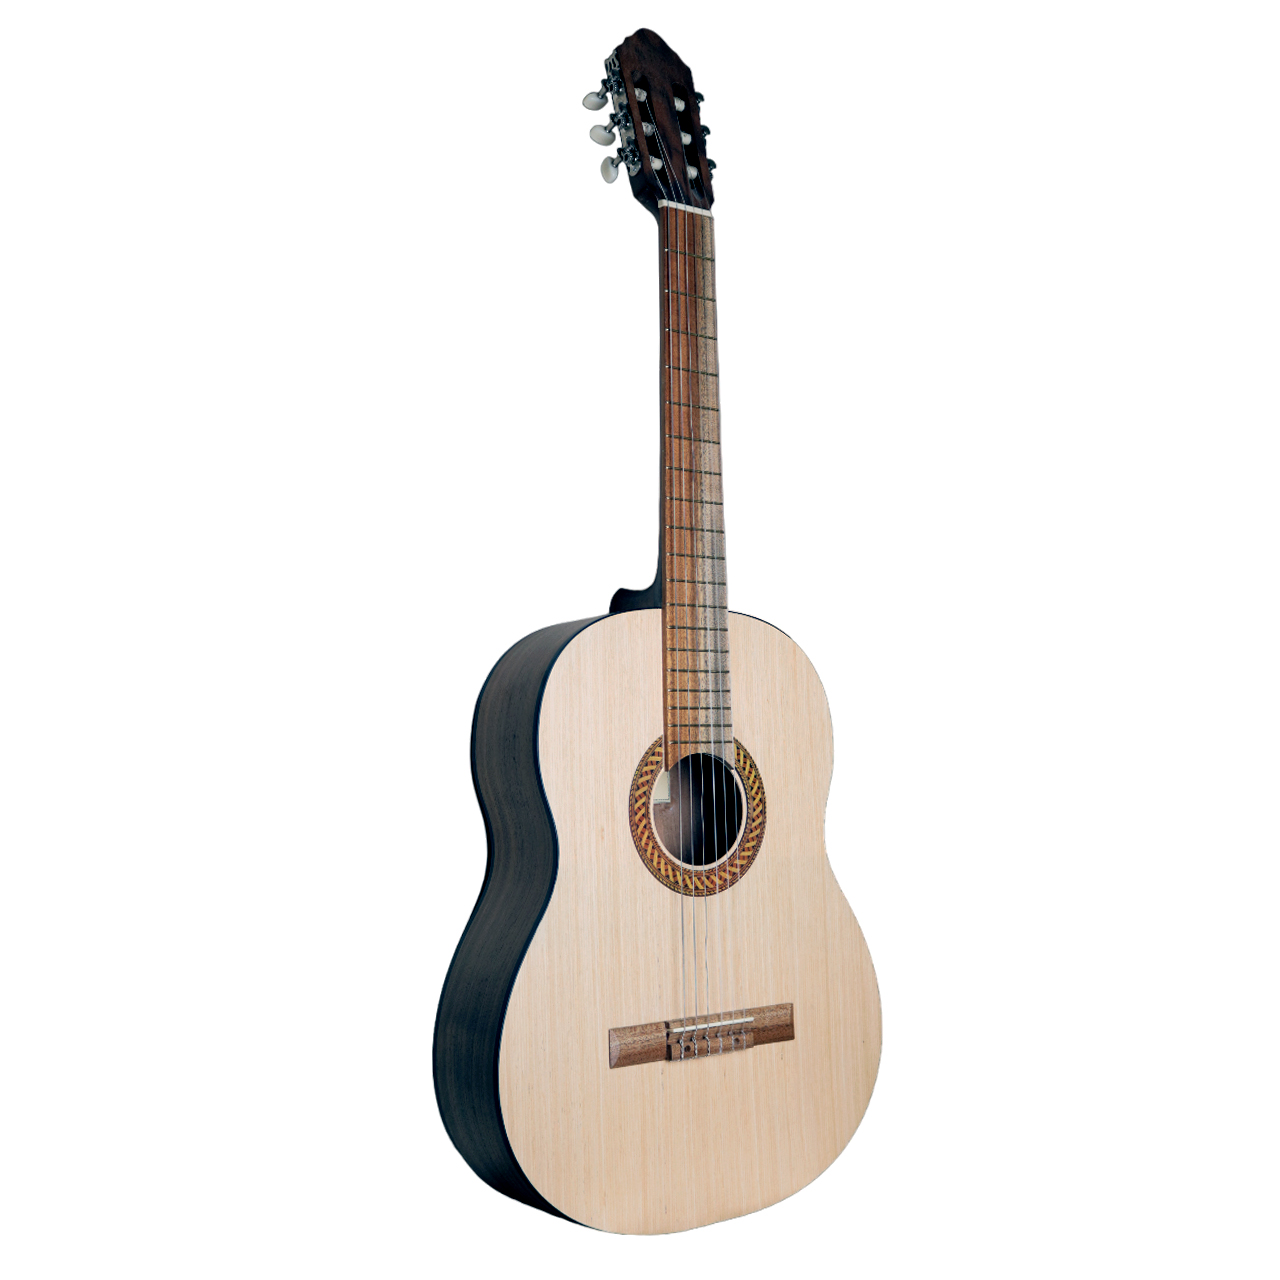 نکته خرید - قیمت روز گیتار خوزه مارتینز مدل CL7 خرید